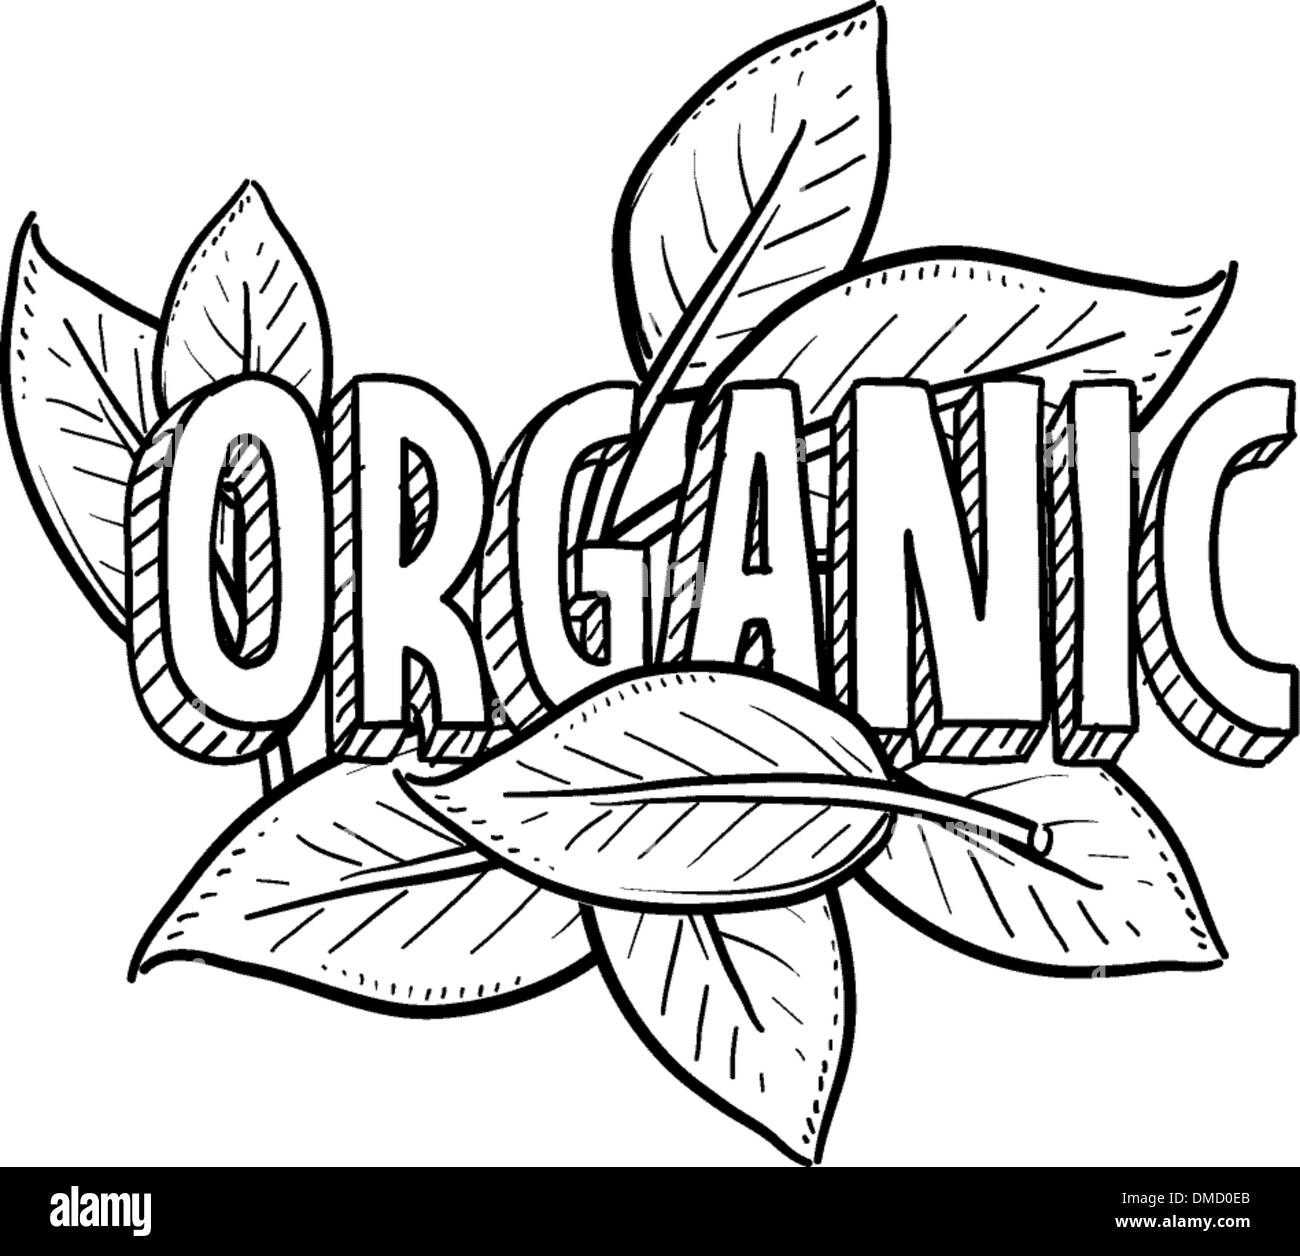 Resultado de imagen para organic food drawing